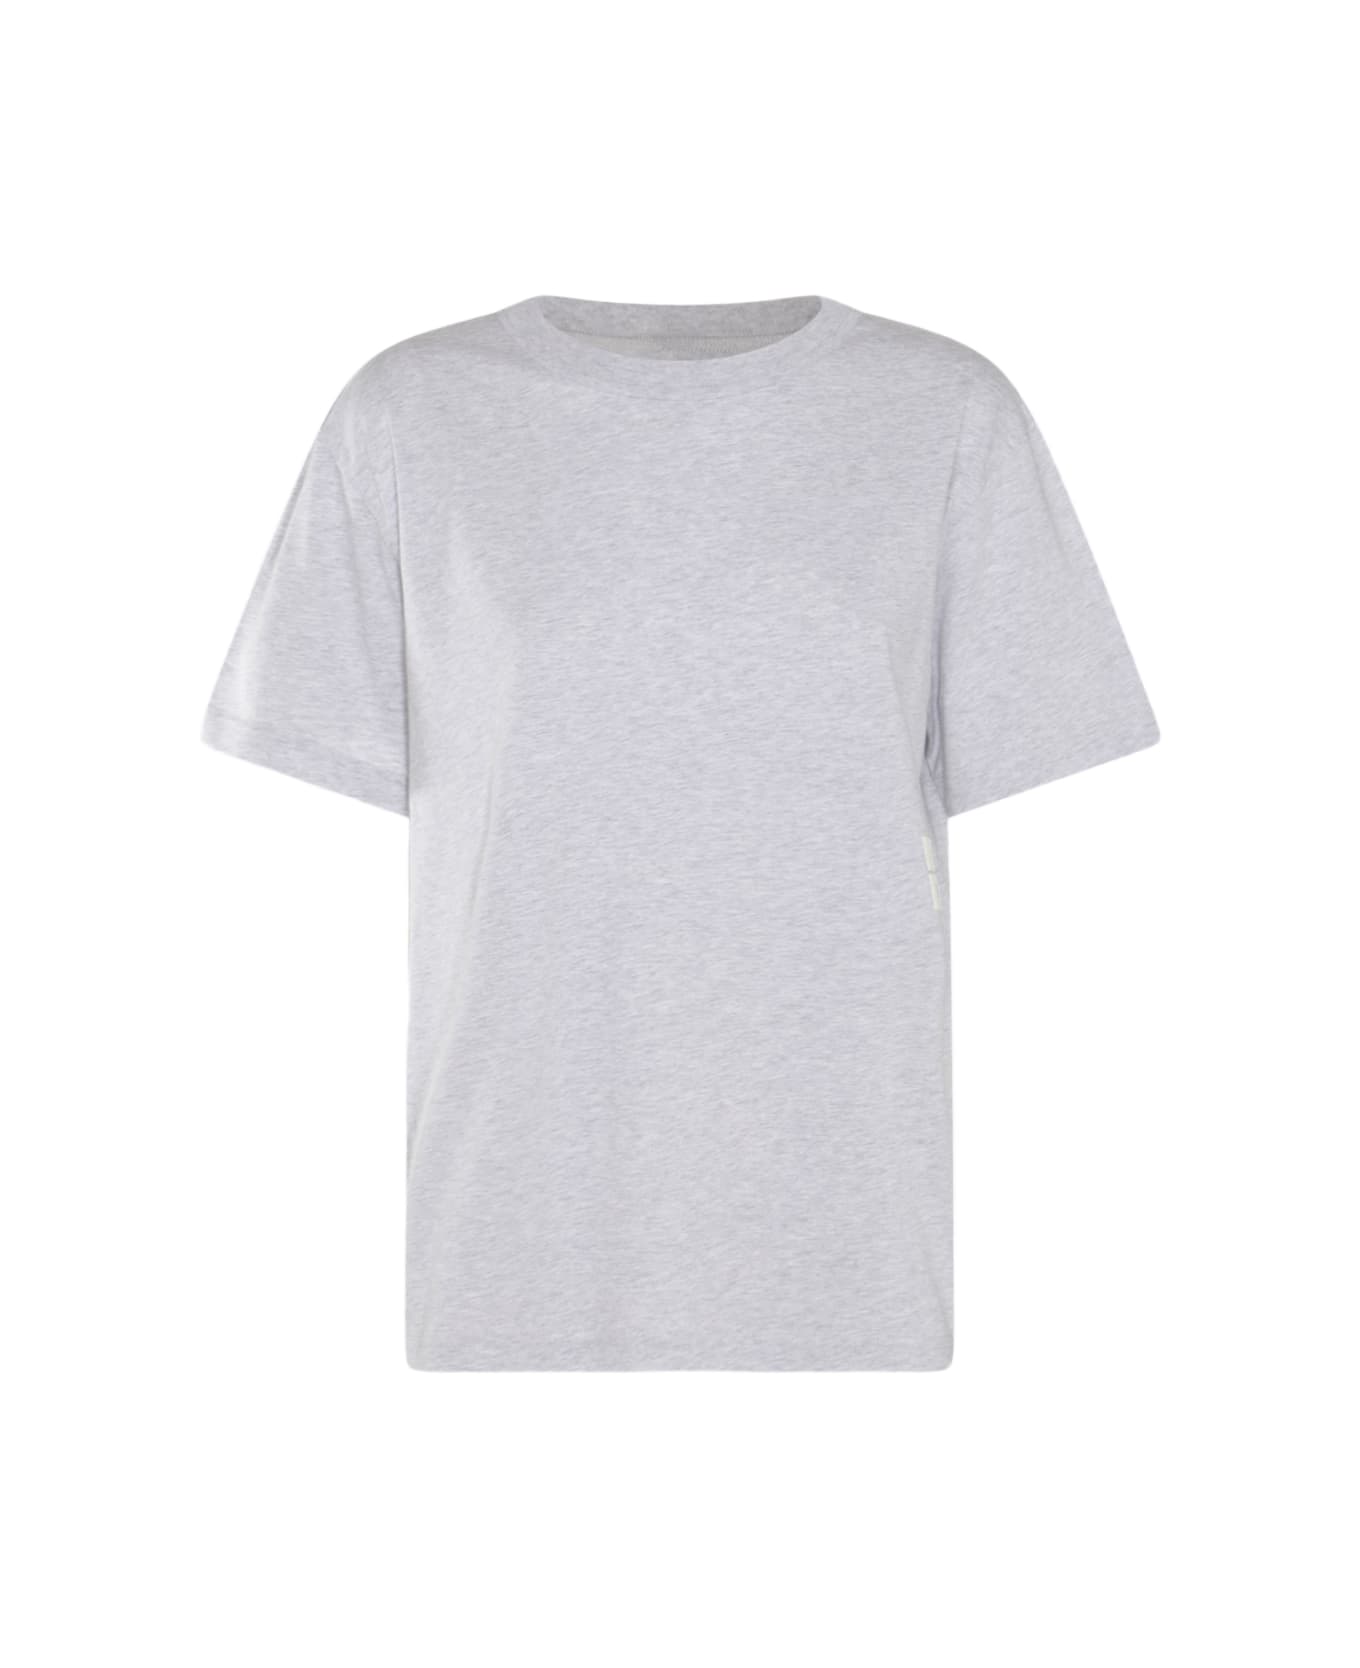 Alexander Wang Light Grey Cotton T-shirt - LIGHT HEATHER GREY